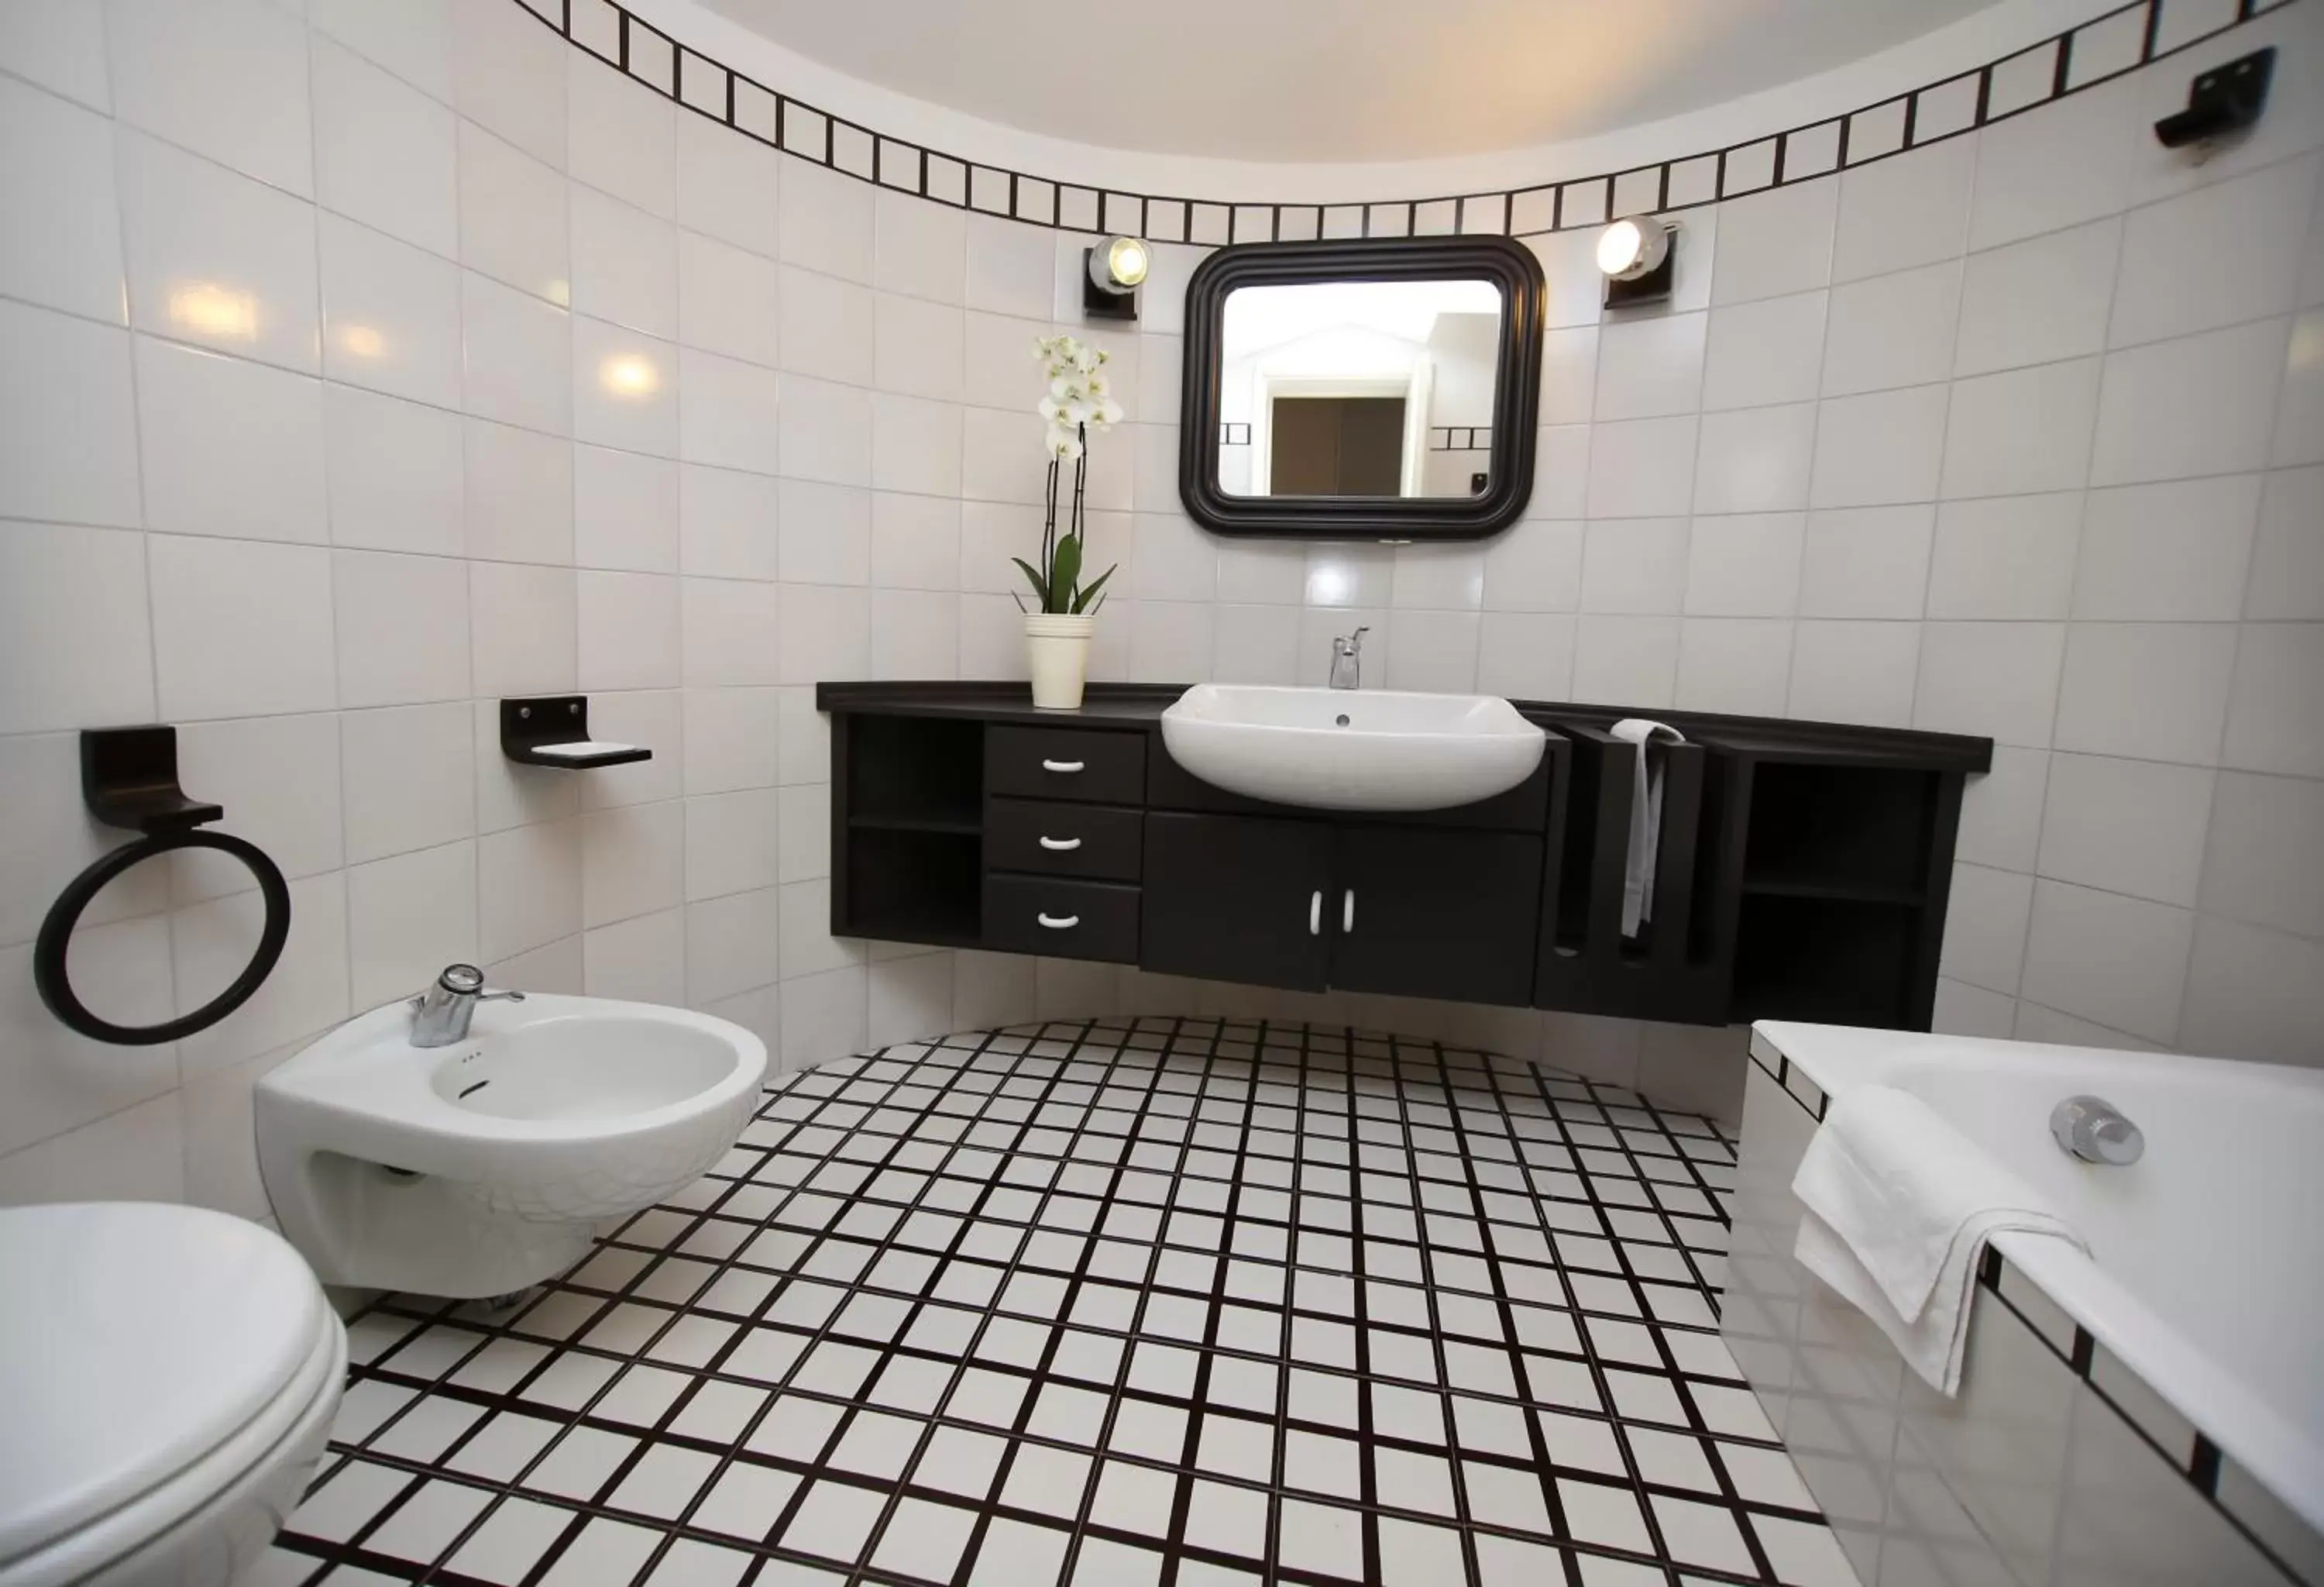 Bathroom in Ai Giardini di San Vitale